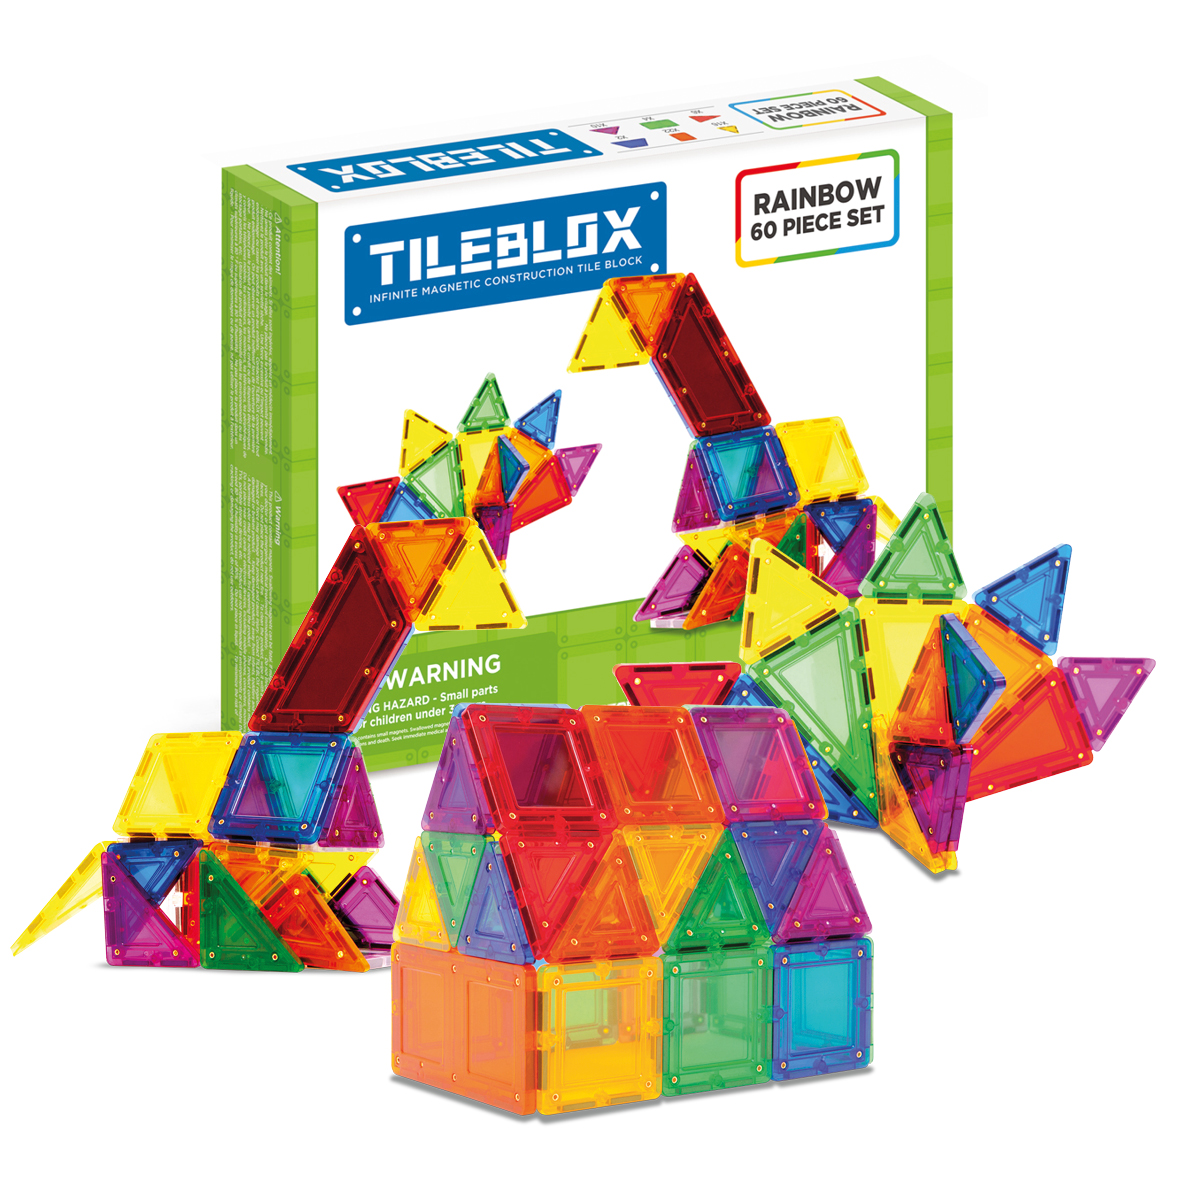 Tileblox 60pc set